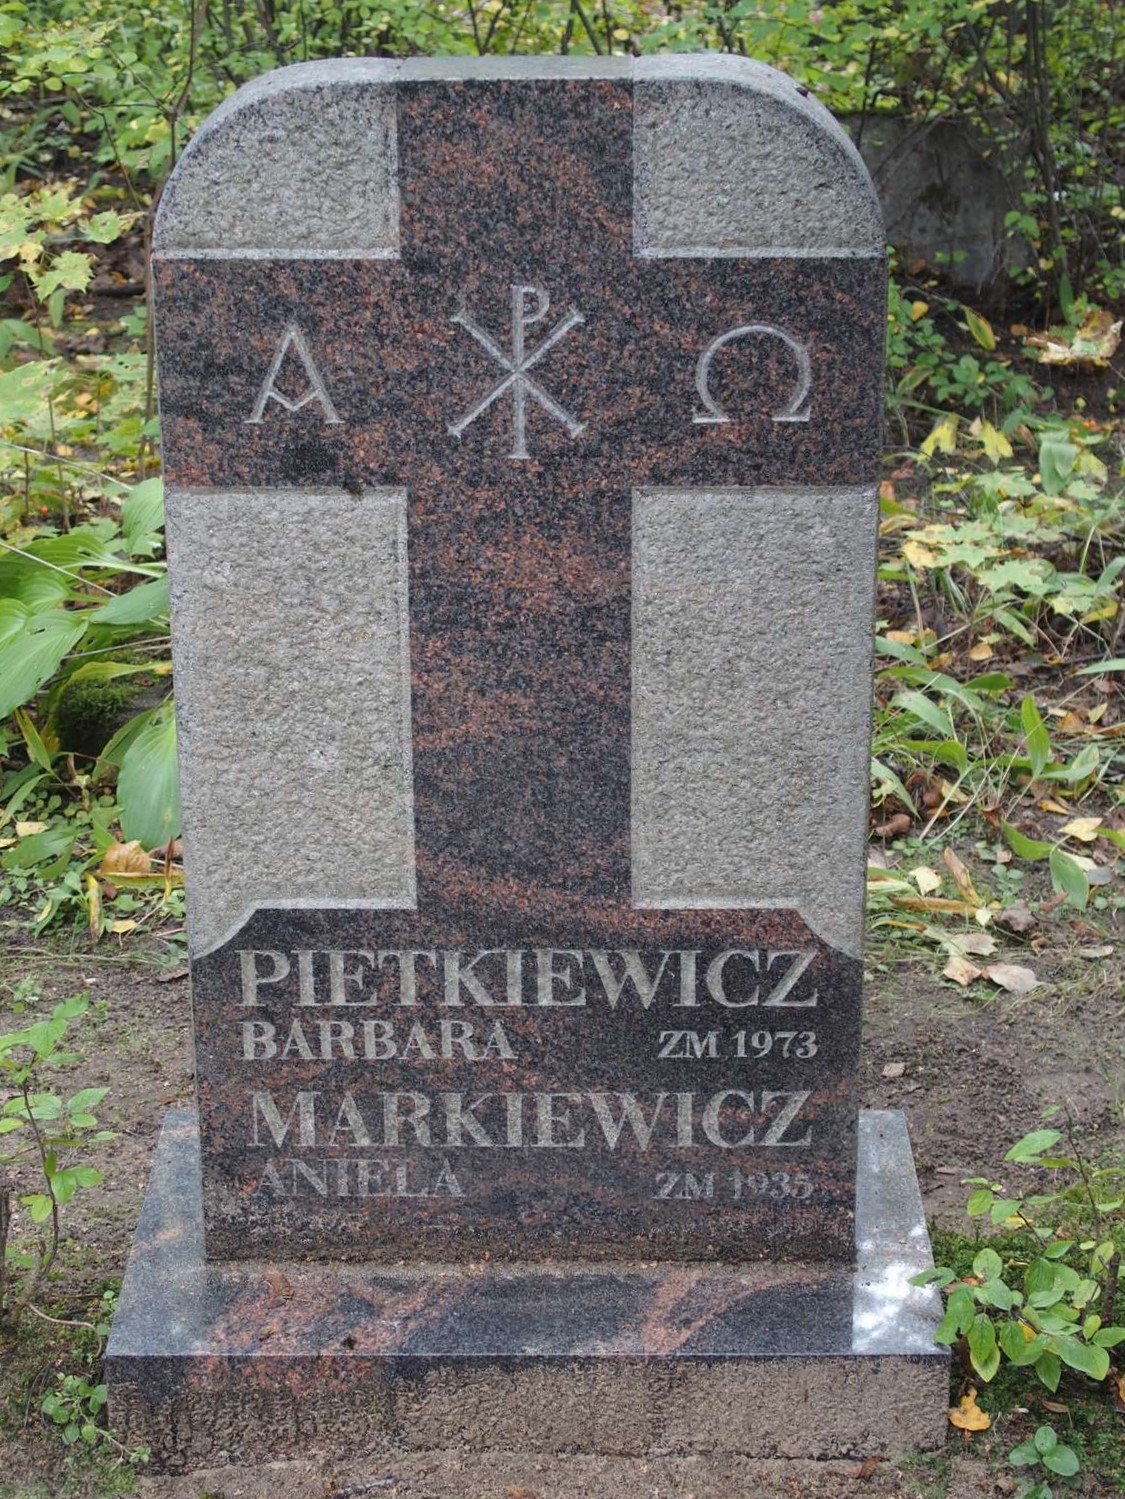 Tombstone of Aniela Markiewicz and Barbara Pietkiewicz